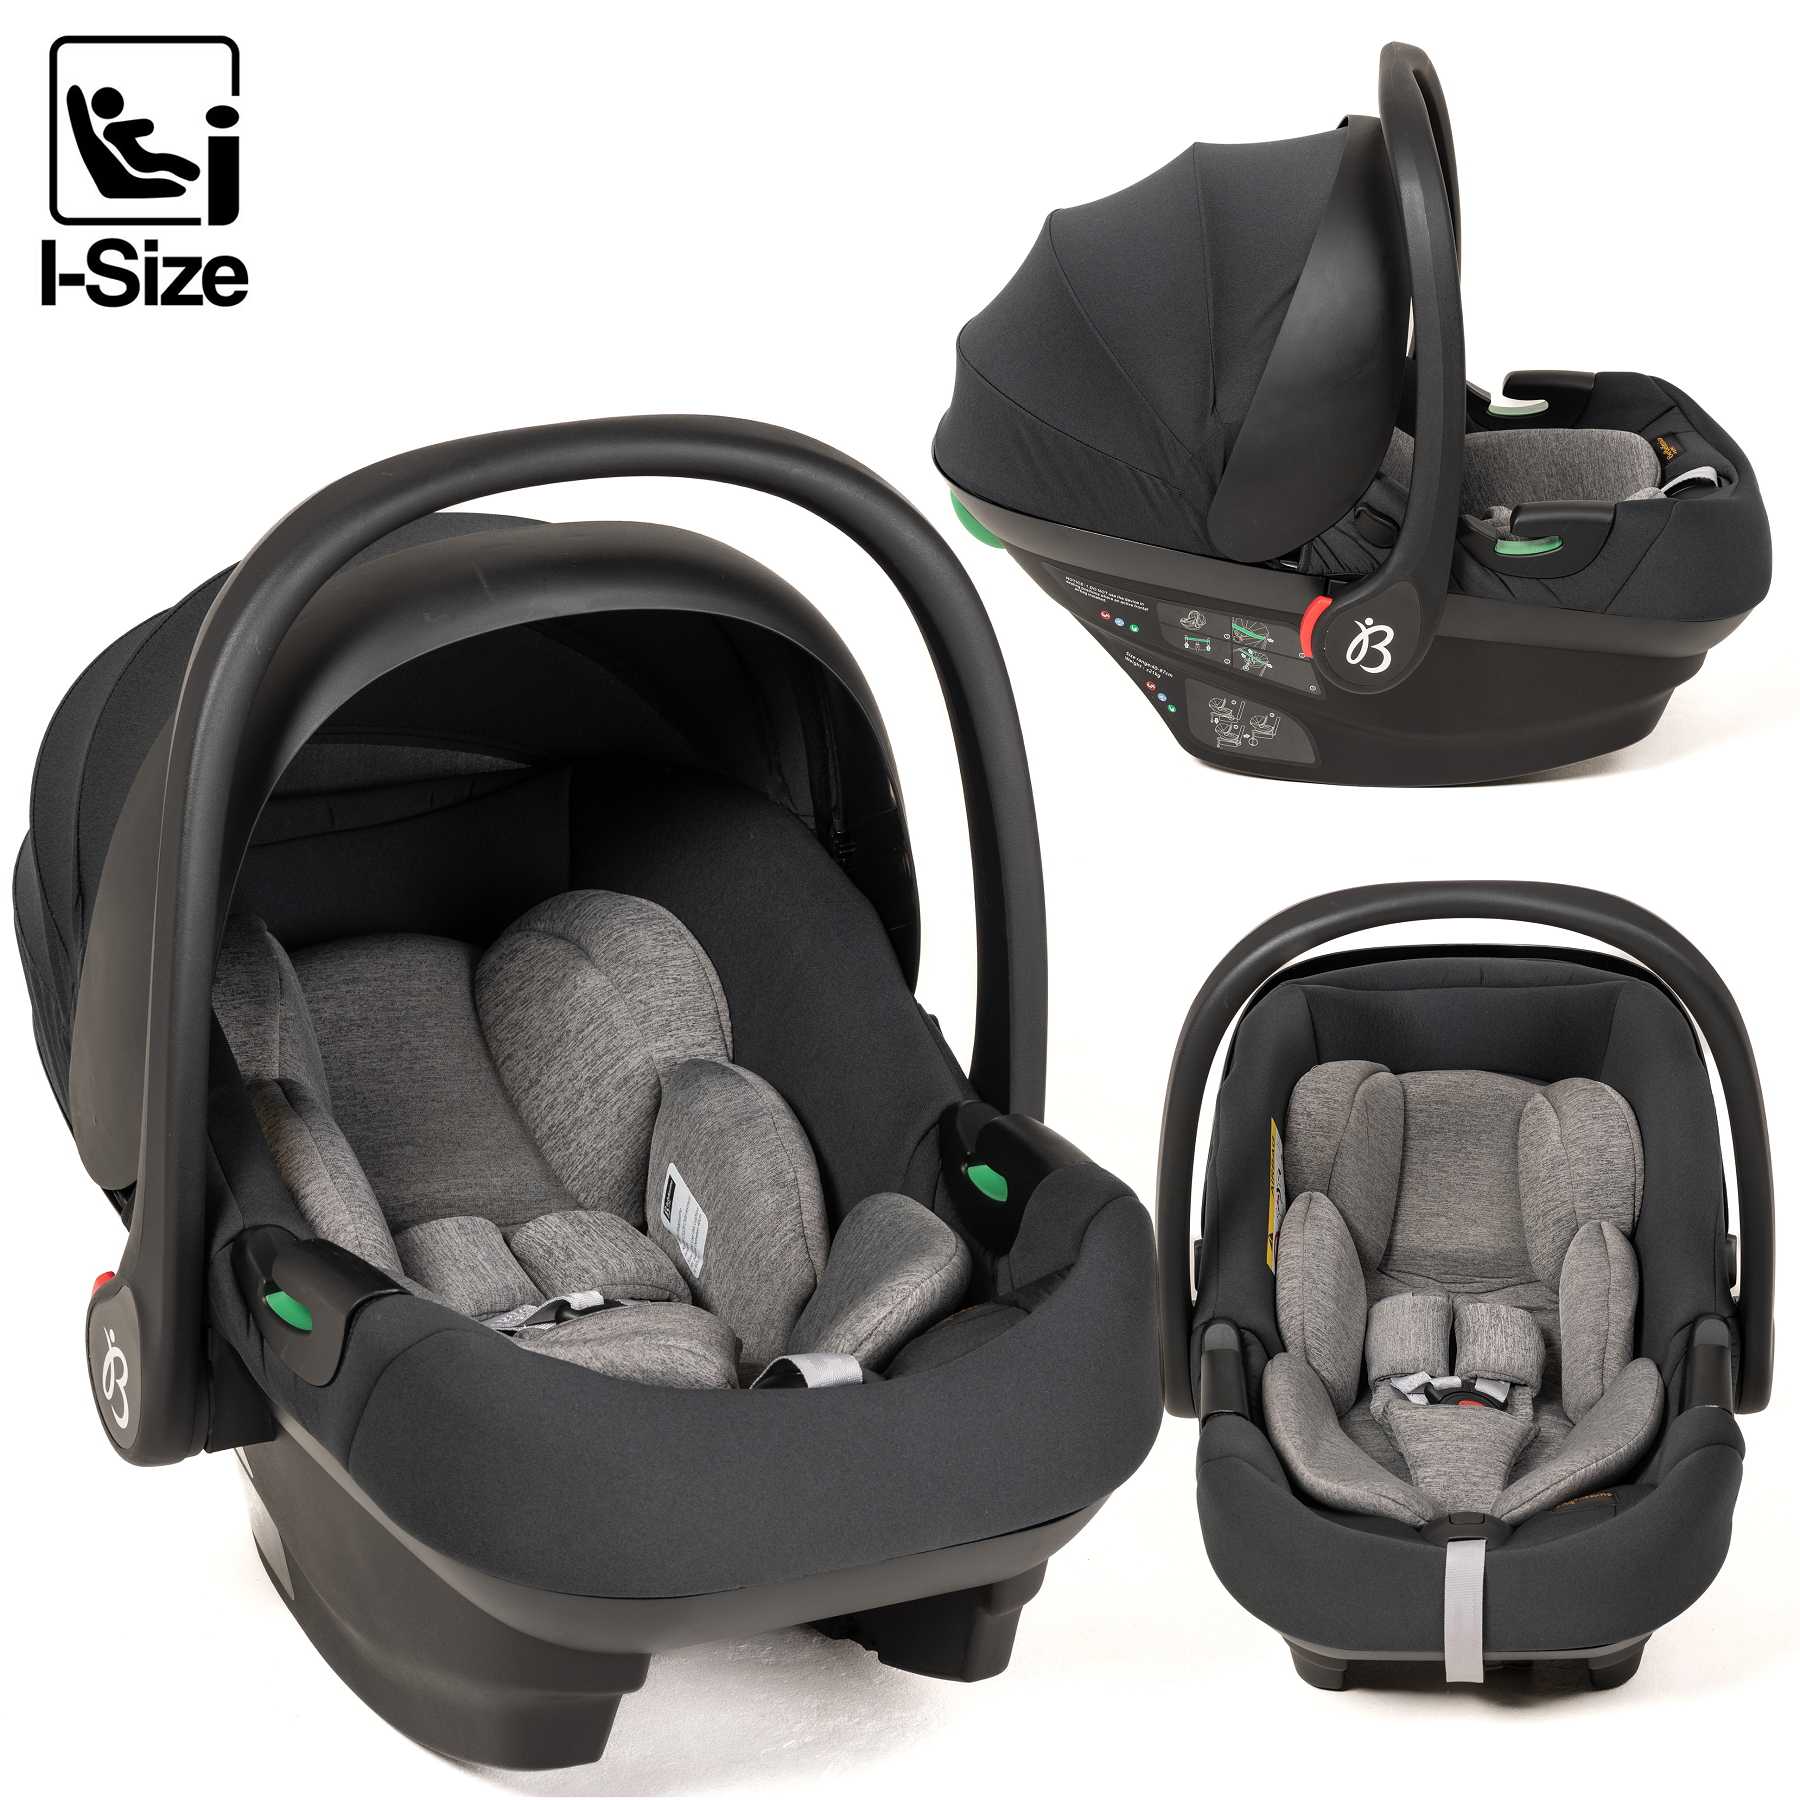 BEBELISSIMO - Siège auto bébé - Cosy CRIOS I-size - groupe 0+ - de 0 à 21kg  - de 40 à 87cm - gris